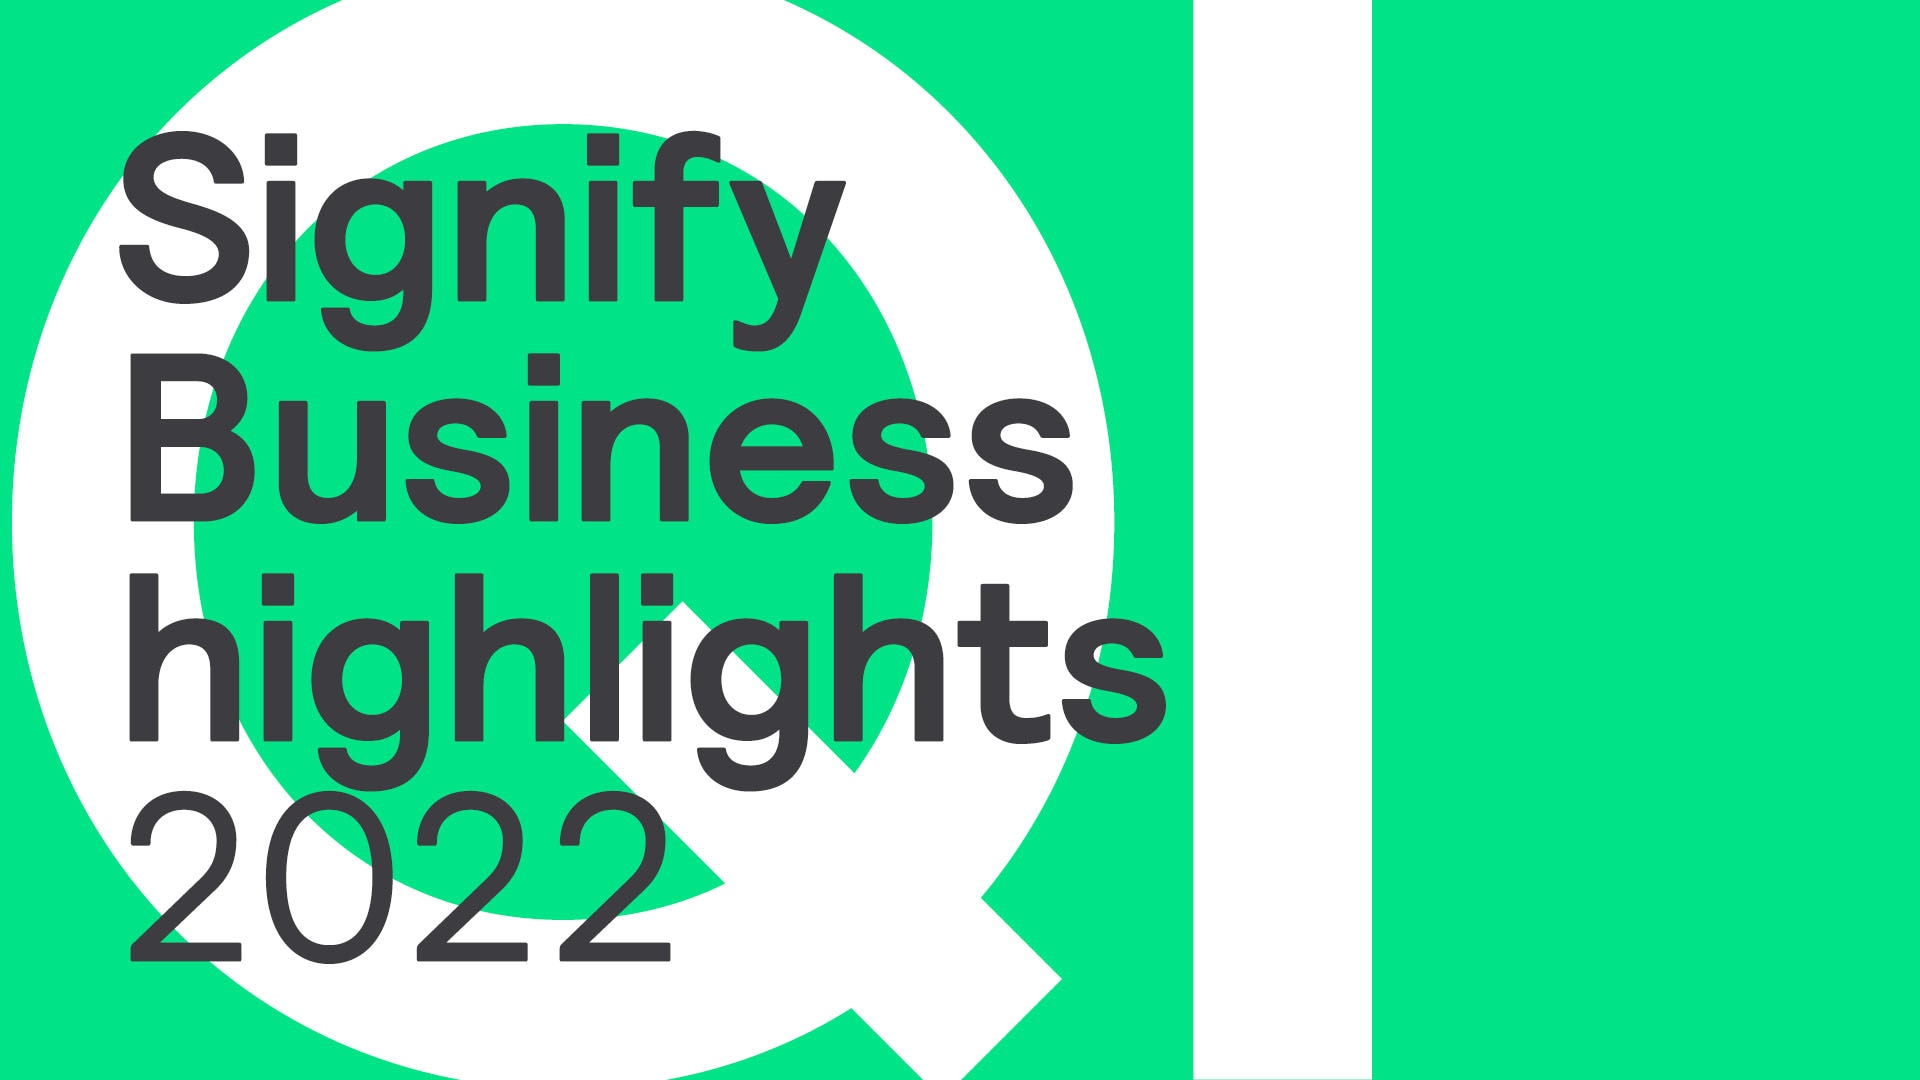 Q1 Business Highlights